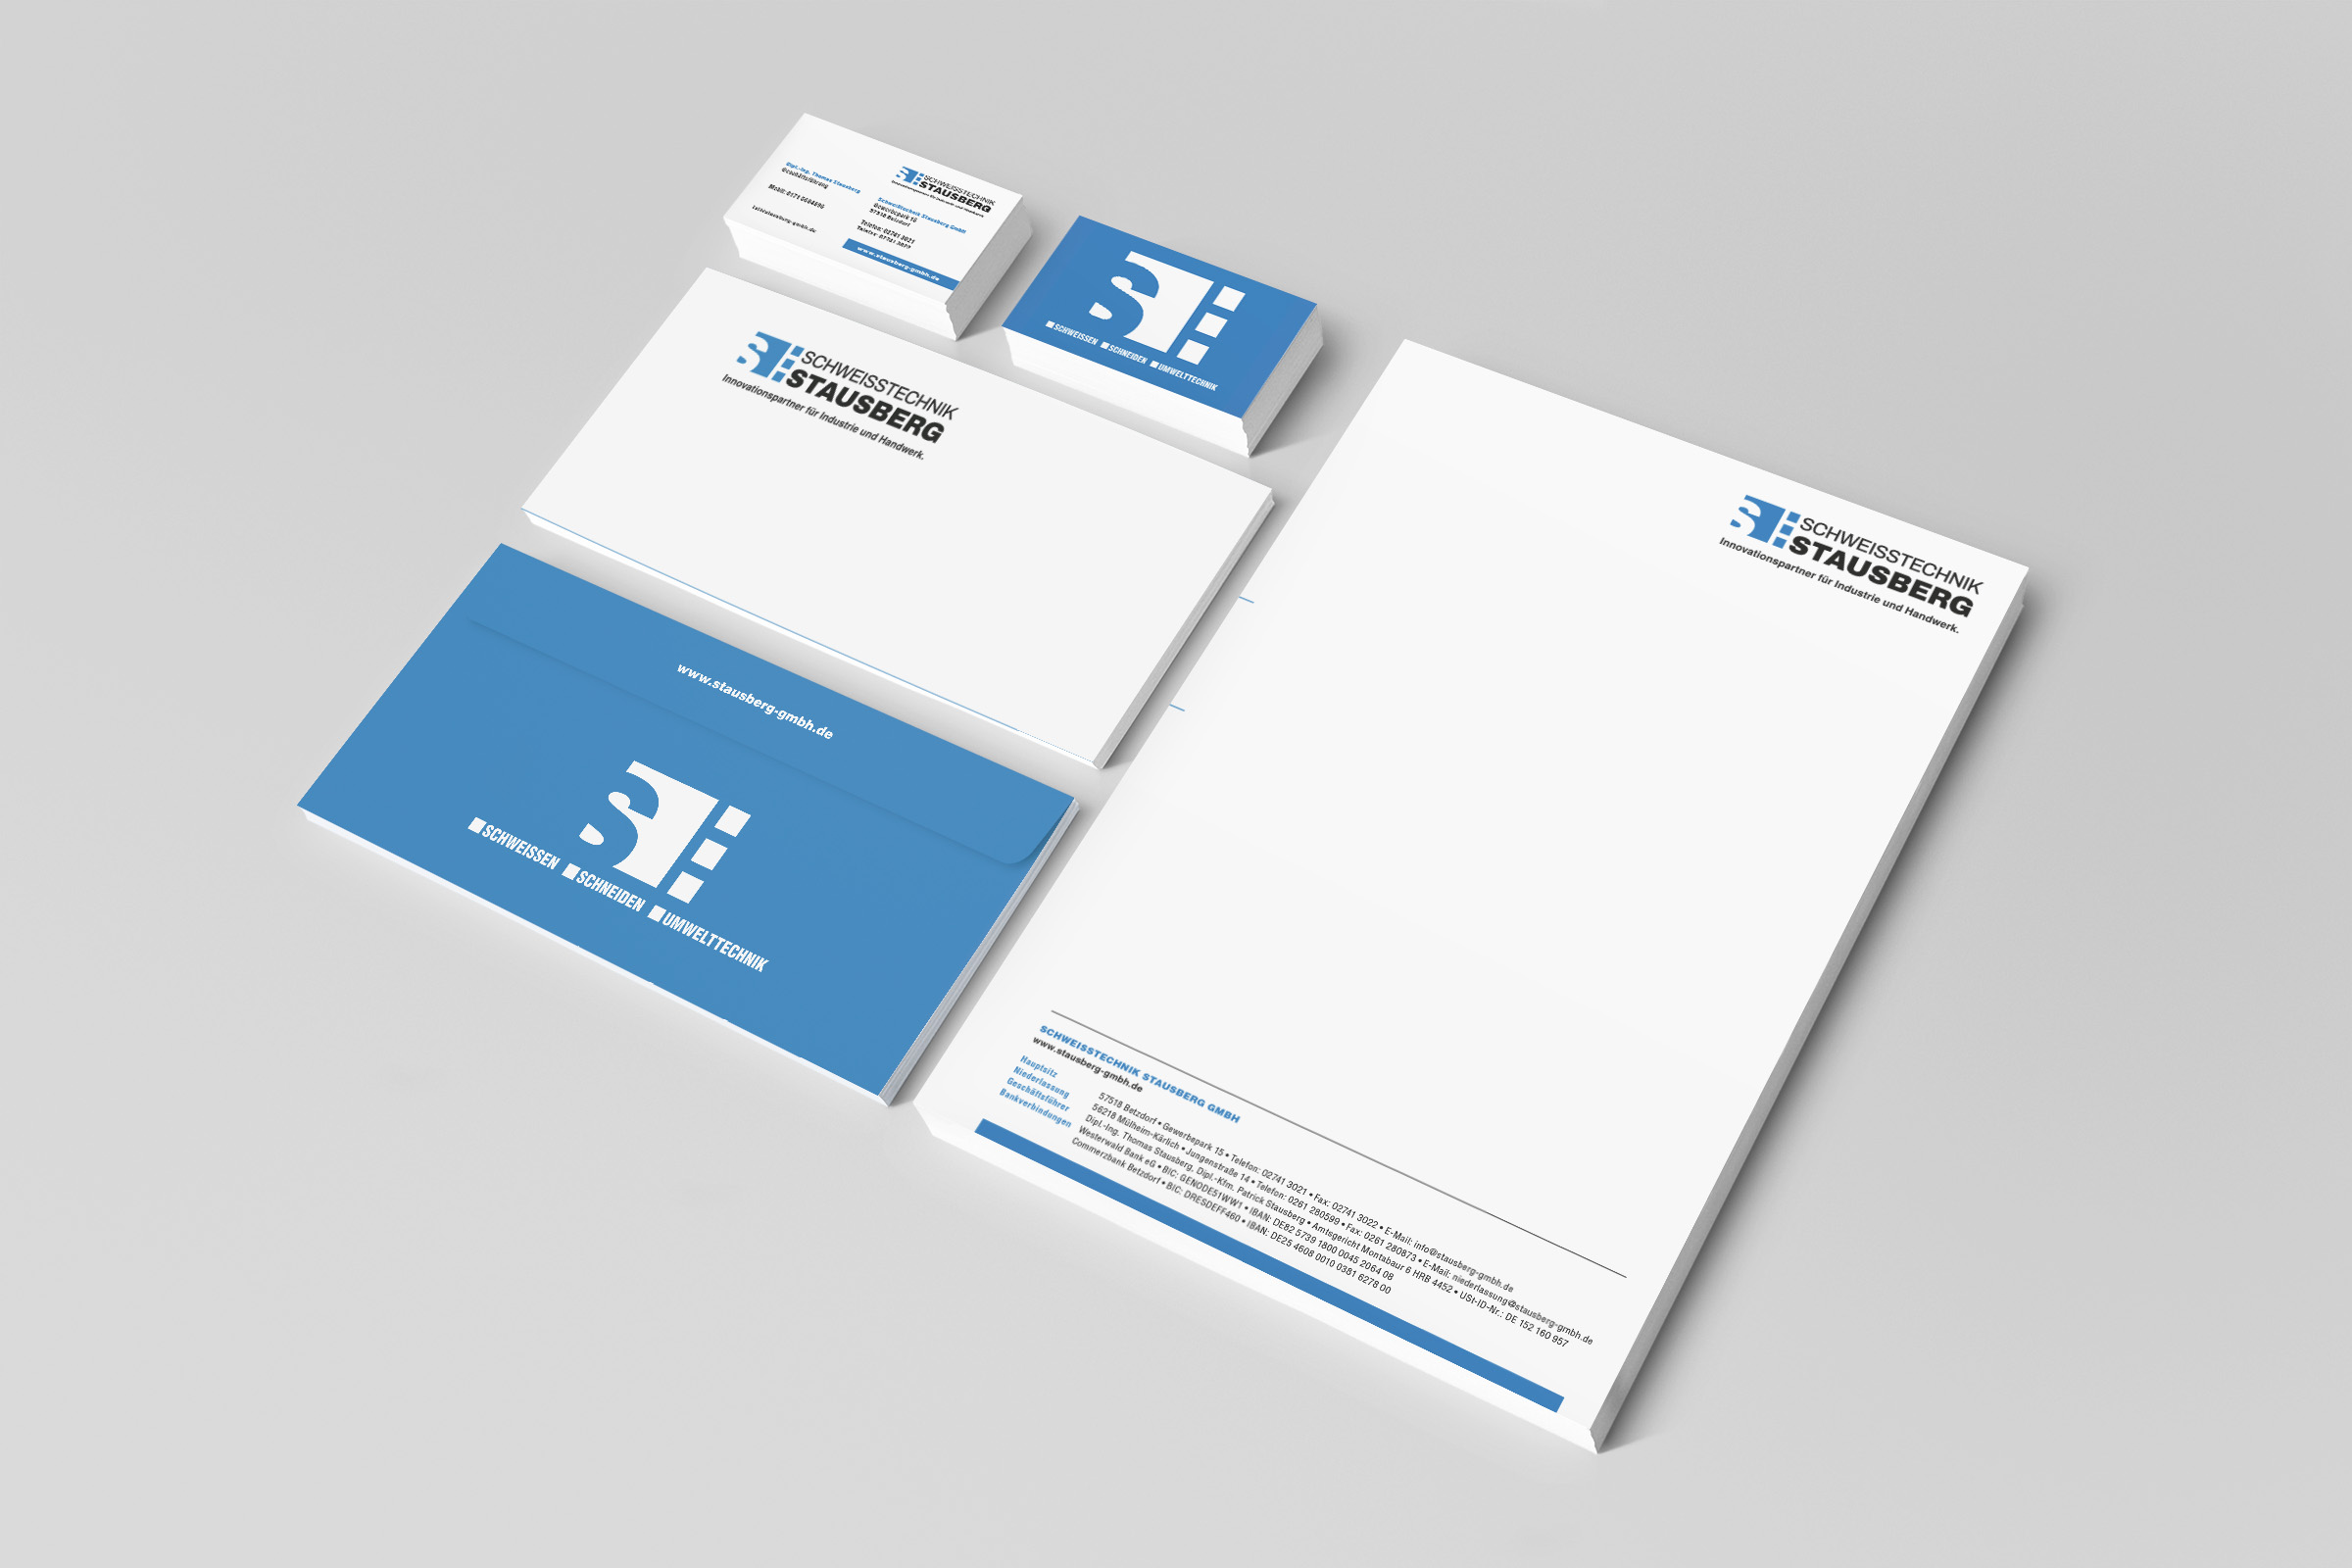 Gestaltung Geschäftsausstattung: Briefbogen, Visitenkarten, Briefumschlag